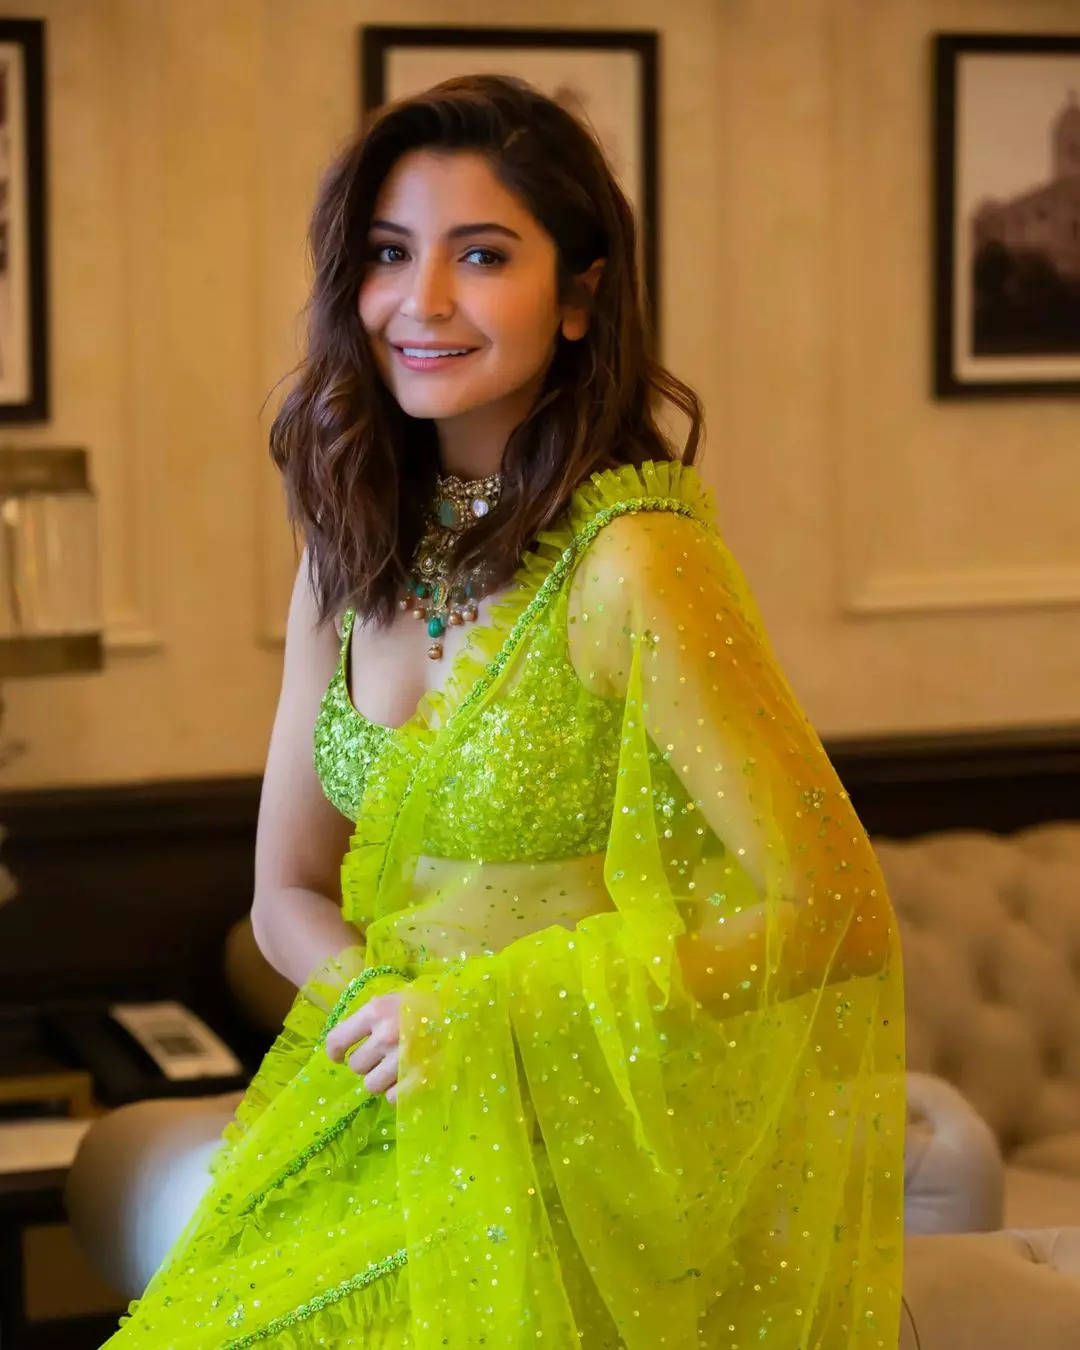 Designer Lehenga Choli For Women Bridesmaid Dresses Indian B